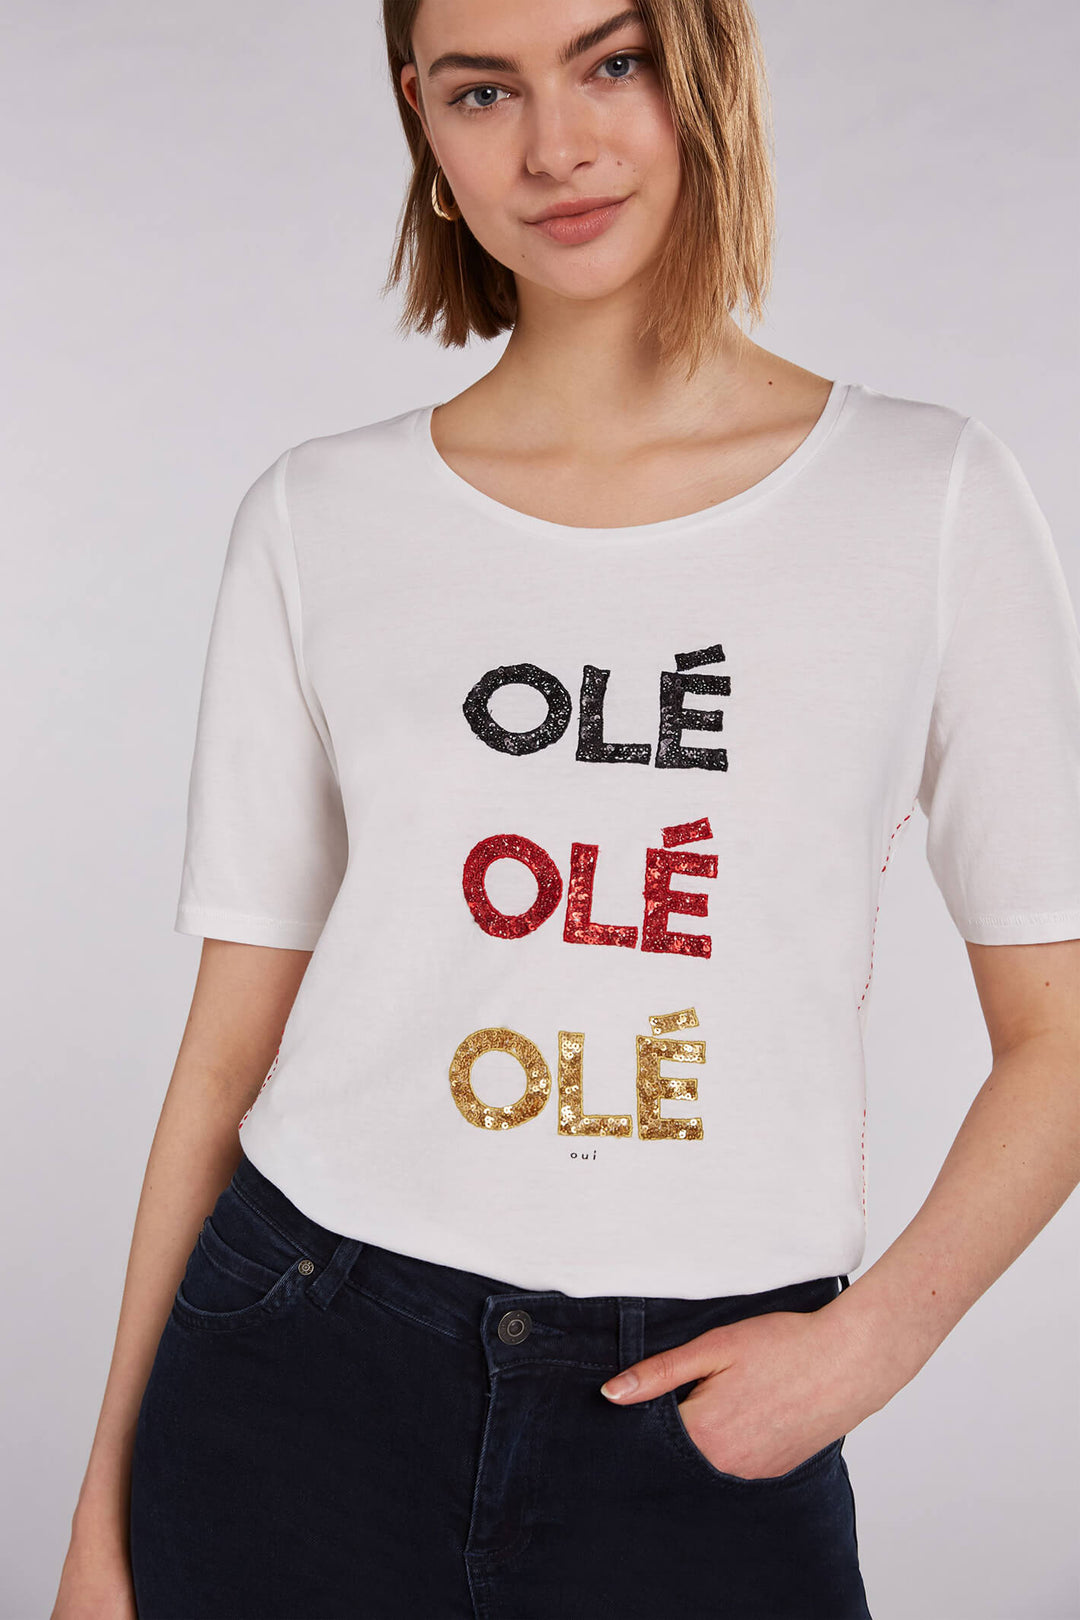 Oui 71498 Ole Ole Off-White T-Shirt - Olivia Grace Fashion